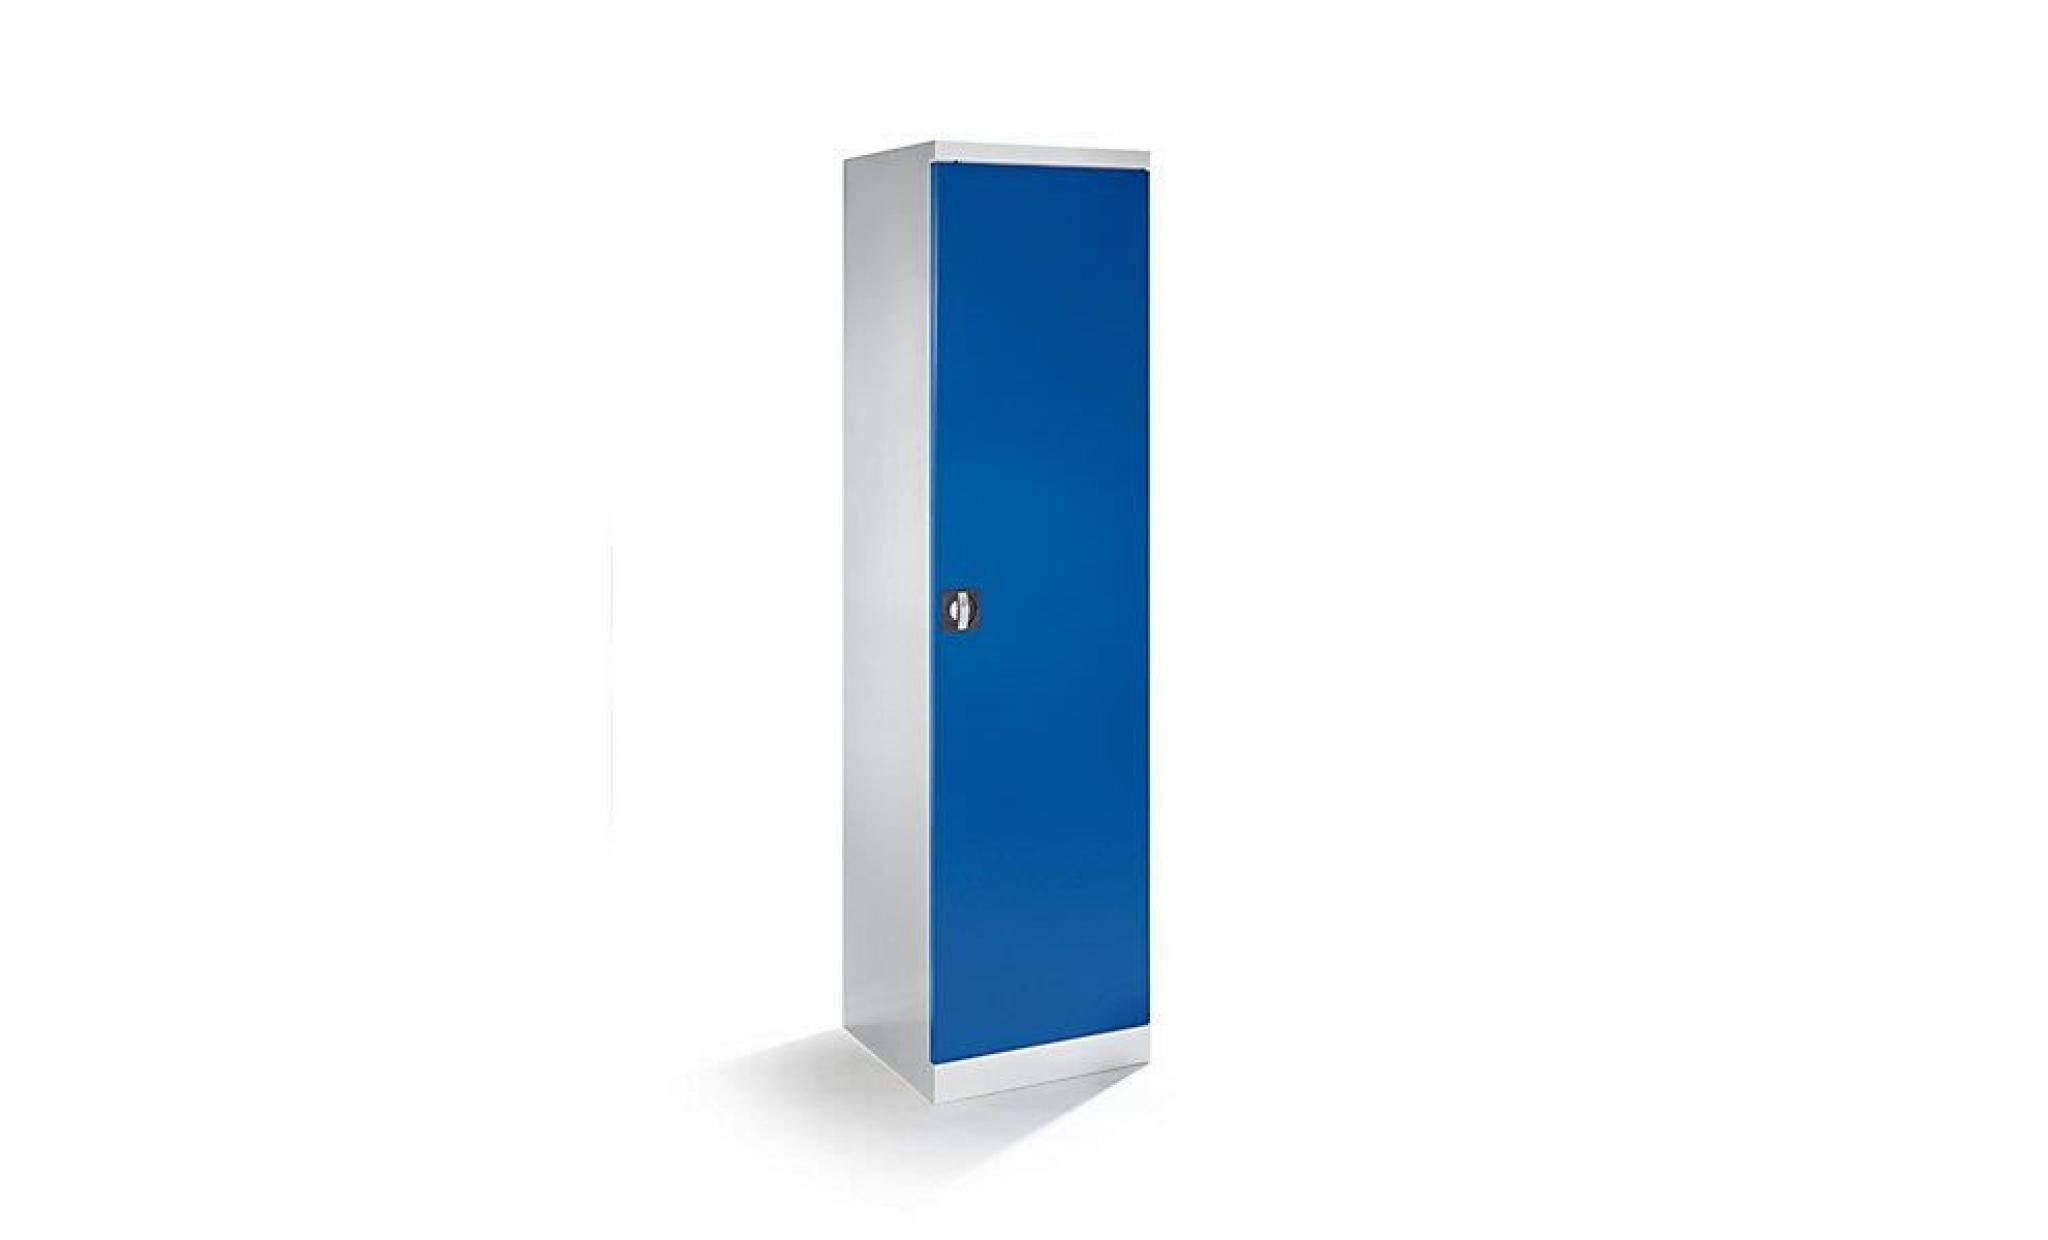 quipo armoire d'atelier   largeur 500 mm, 4 tablettes coulissantes   porte bleu gentiane   armoire d'atelier armoire métallique pas cher